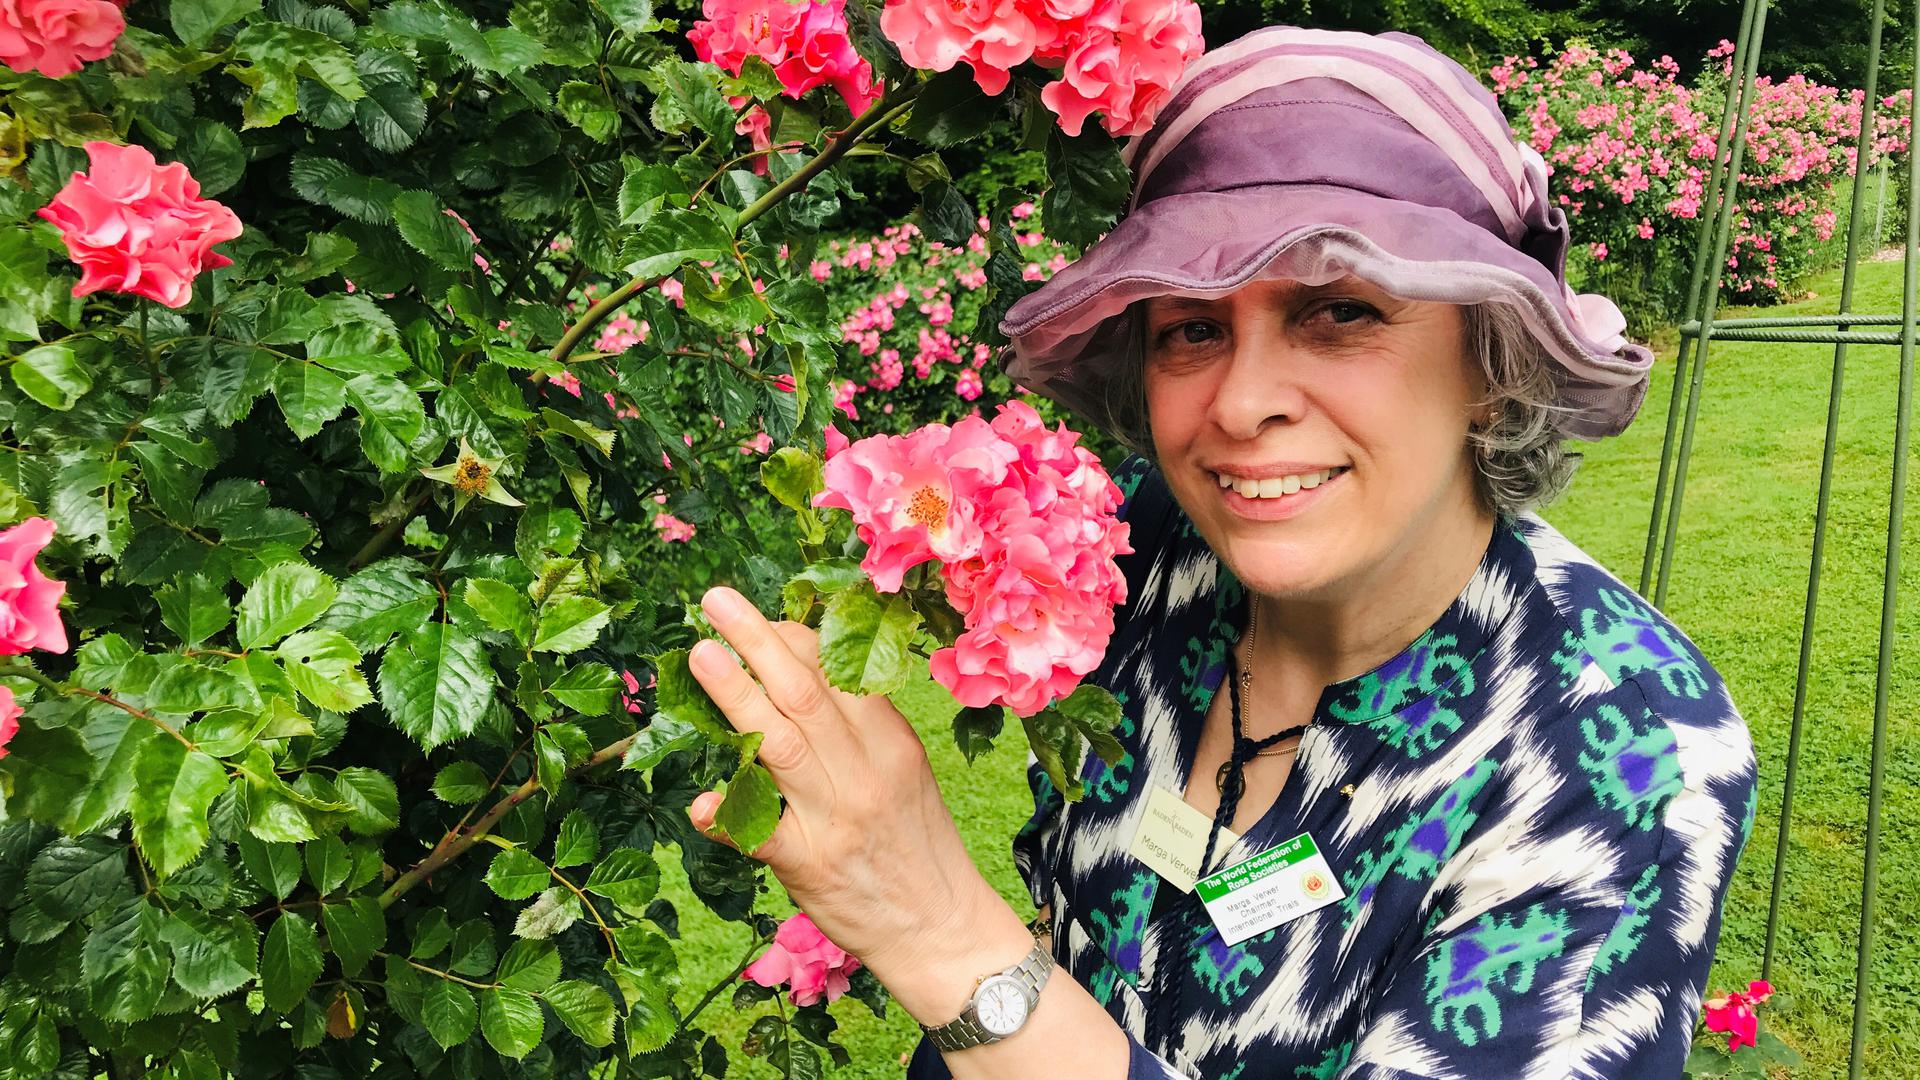 Marga Verwer koordiniert für den Weltrosenverband die Internationalen Rosenwettbewerbe. Beim Rosenneuheitenwettbewerb in Baden-Baden ist sie die Präsidentin der Internationalen Jury. 